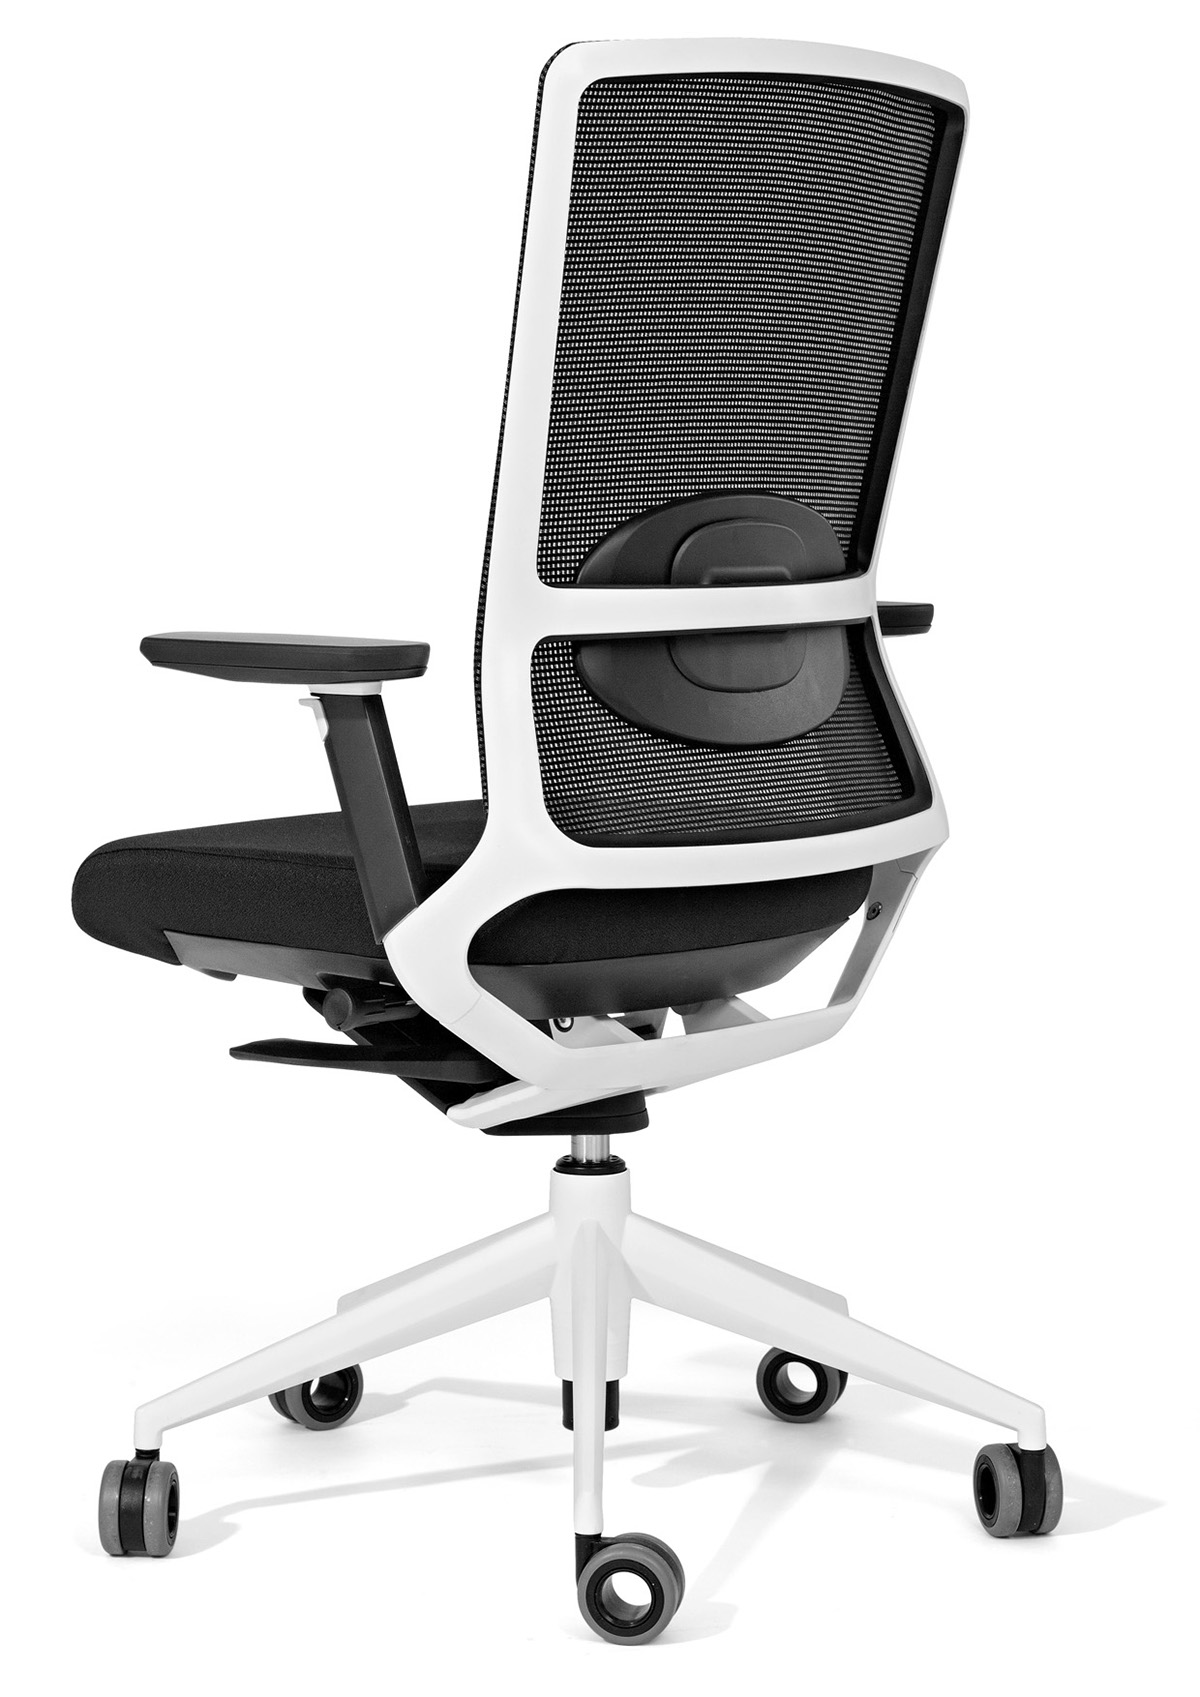 TNK A500 chair chairs silla sillas furniture mobiliario Alegre Design diseño design diseño industrial Red Dot Office silla oficina